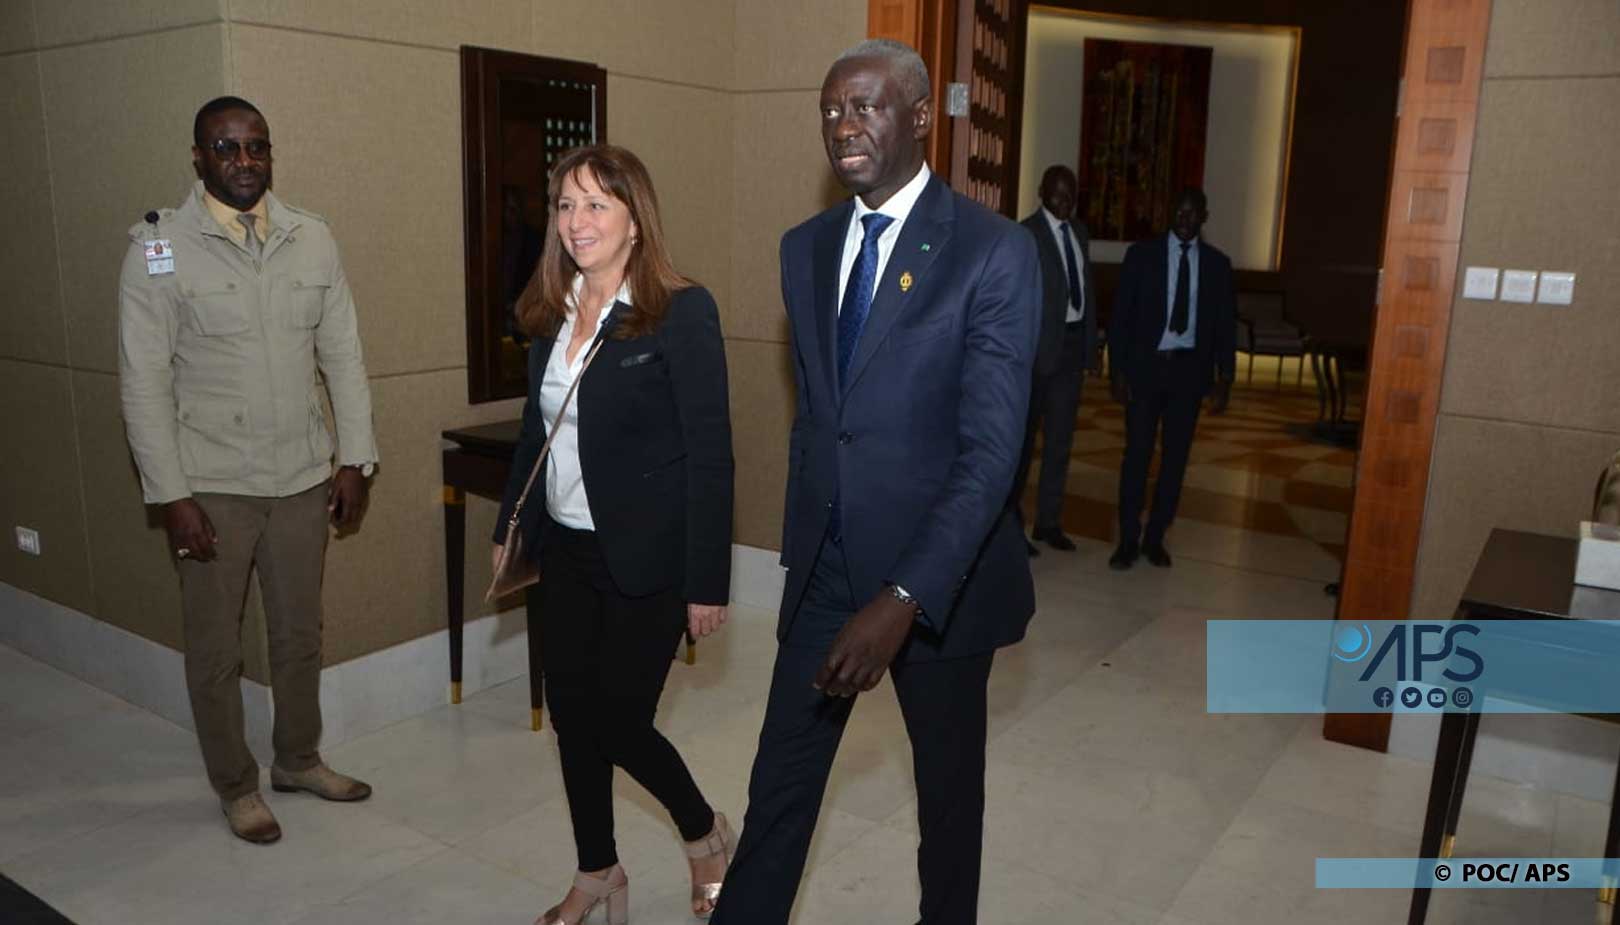 La présidente de l’Assemblée nationale du Québec est arrivée à Dakar